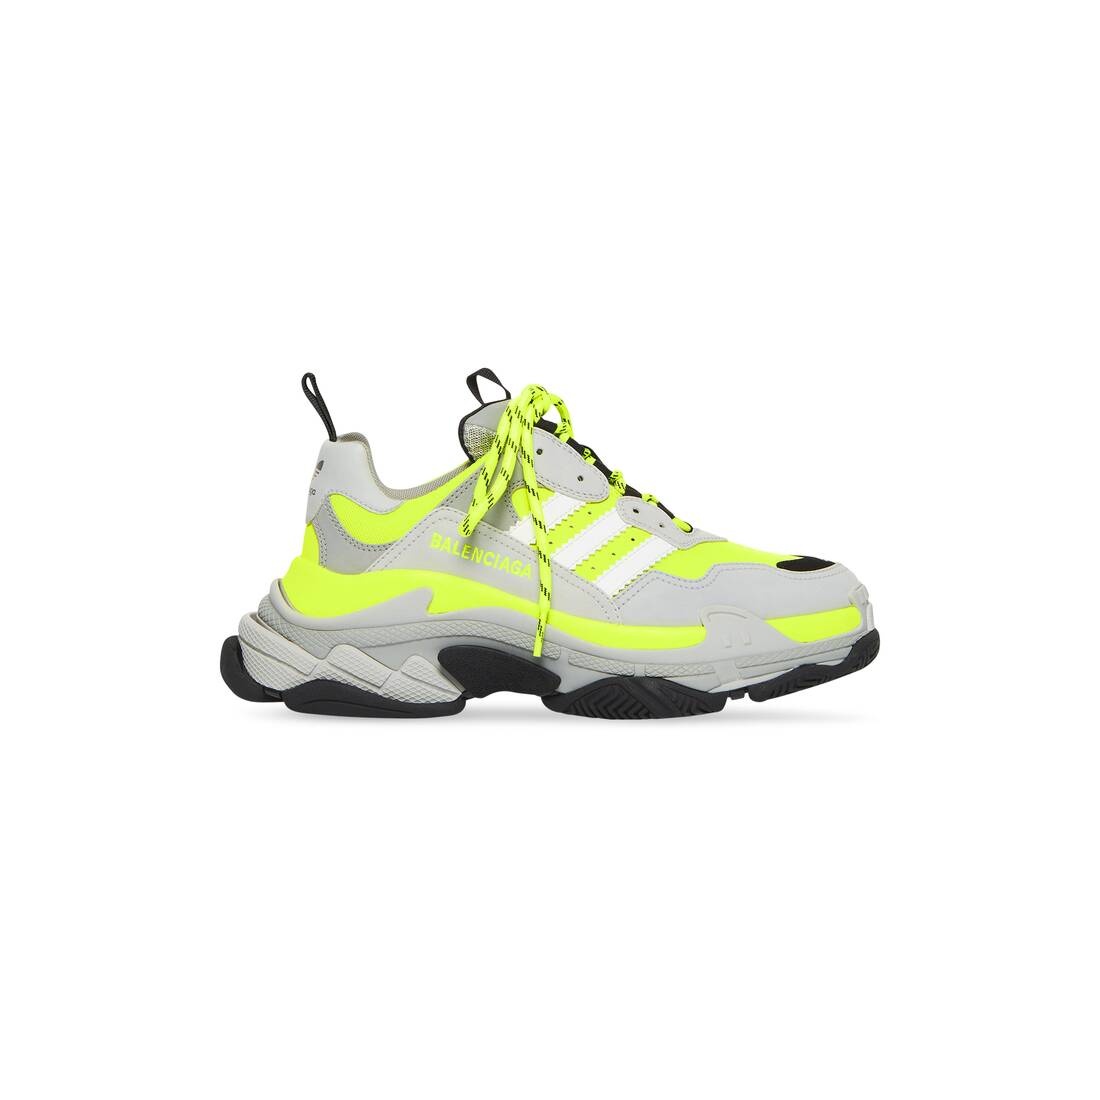 Men's Balenciaga / Adidas Triple S Sneaker in Fluo Yellow - 1